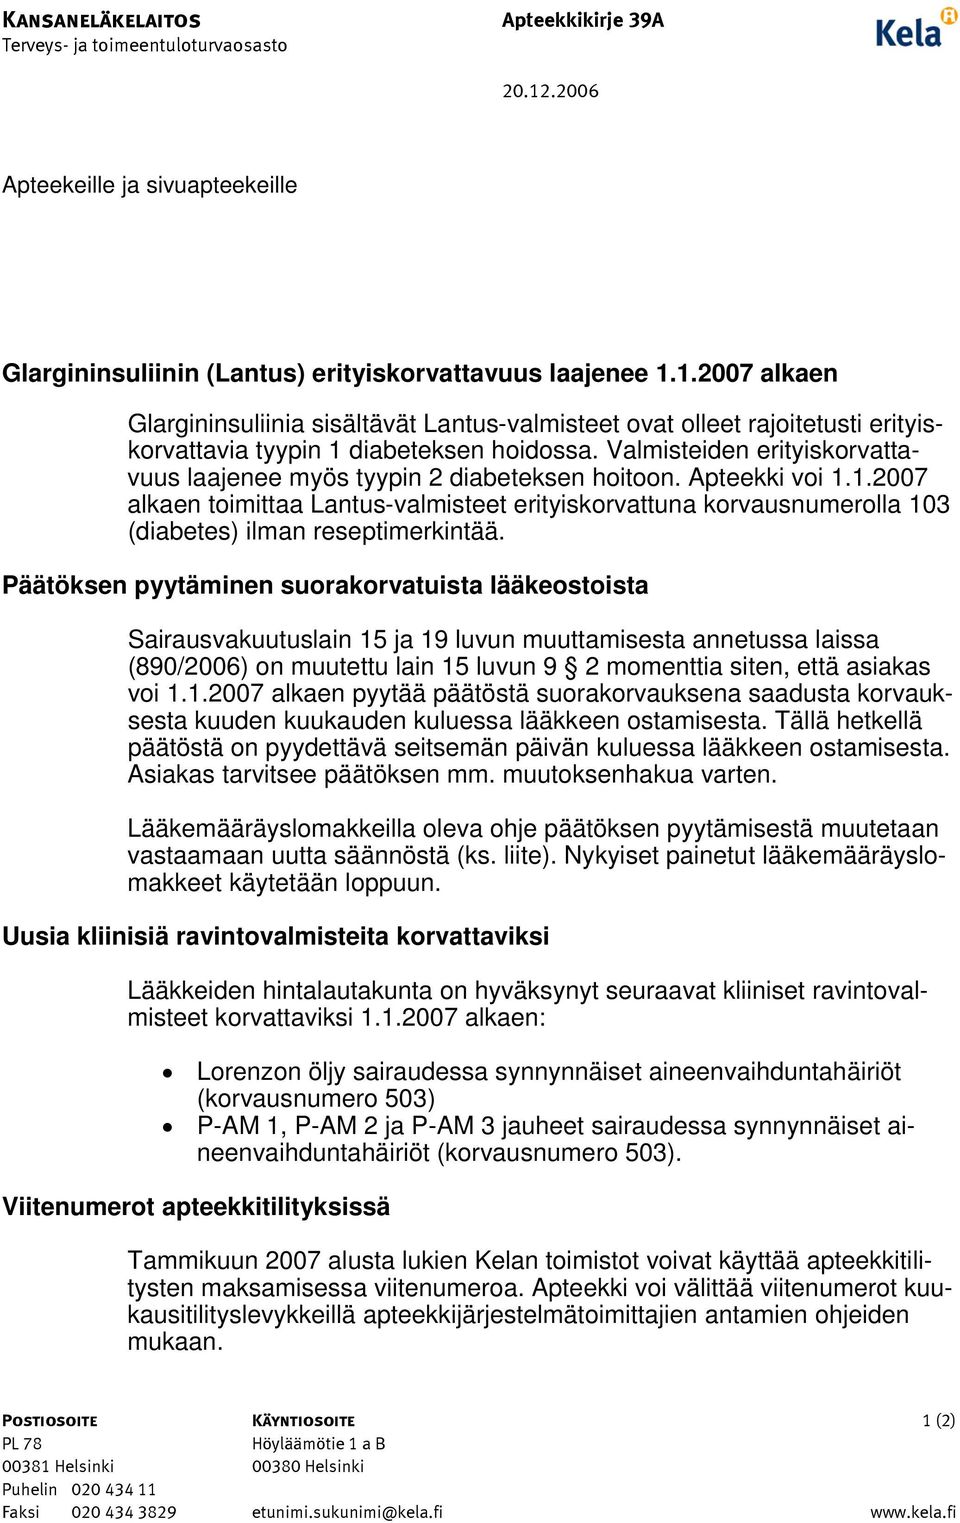 1.2007 alkaen Glargininsuliinia sisältävät Lantus-valmisteet ovat olleet rajoitetusti erityiskorvattavia tyypin 1 diabeteksen hoidossa.